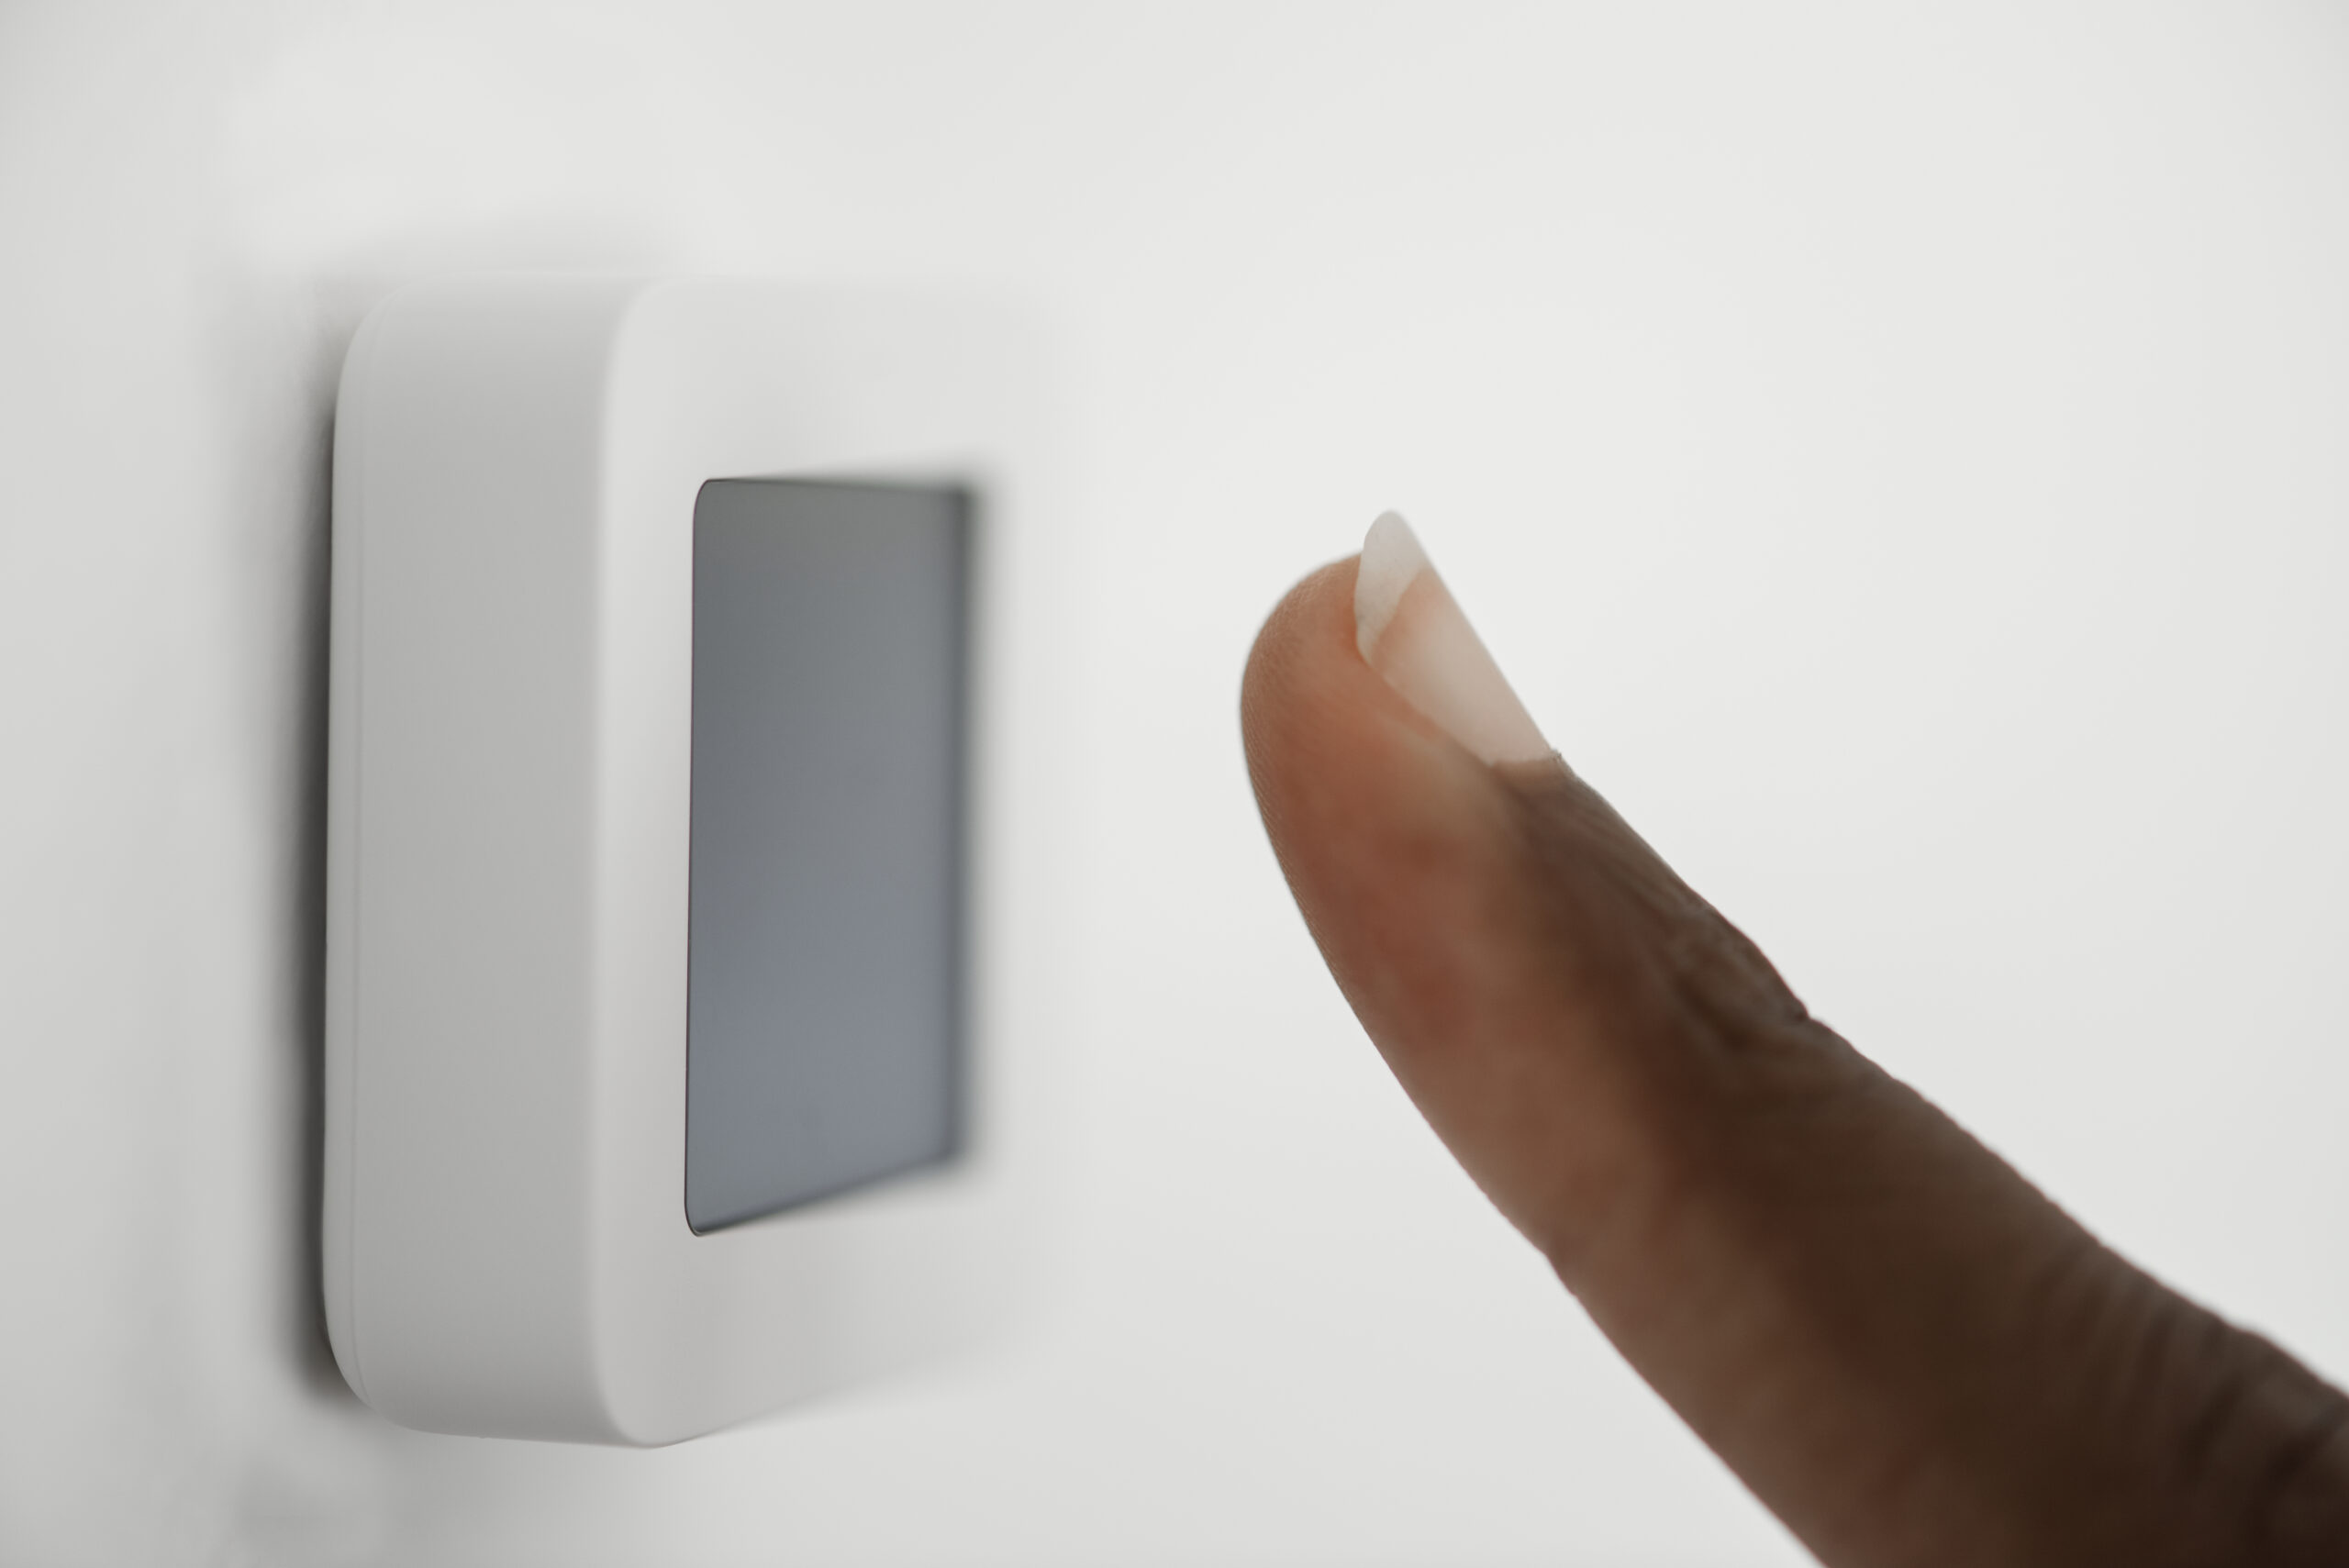 Fingerprint scan for smart home security system